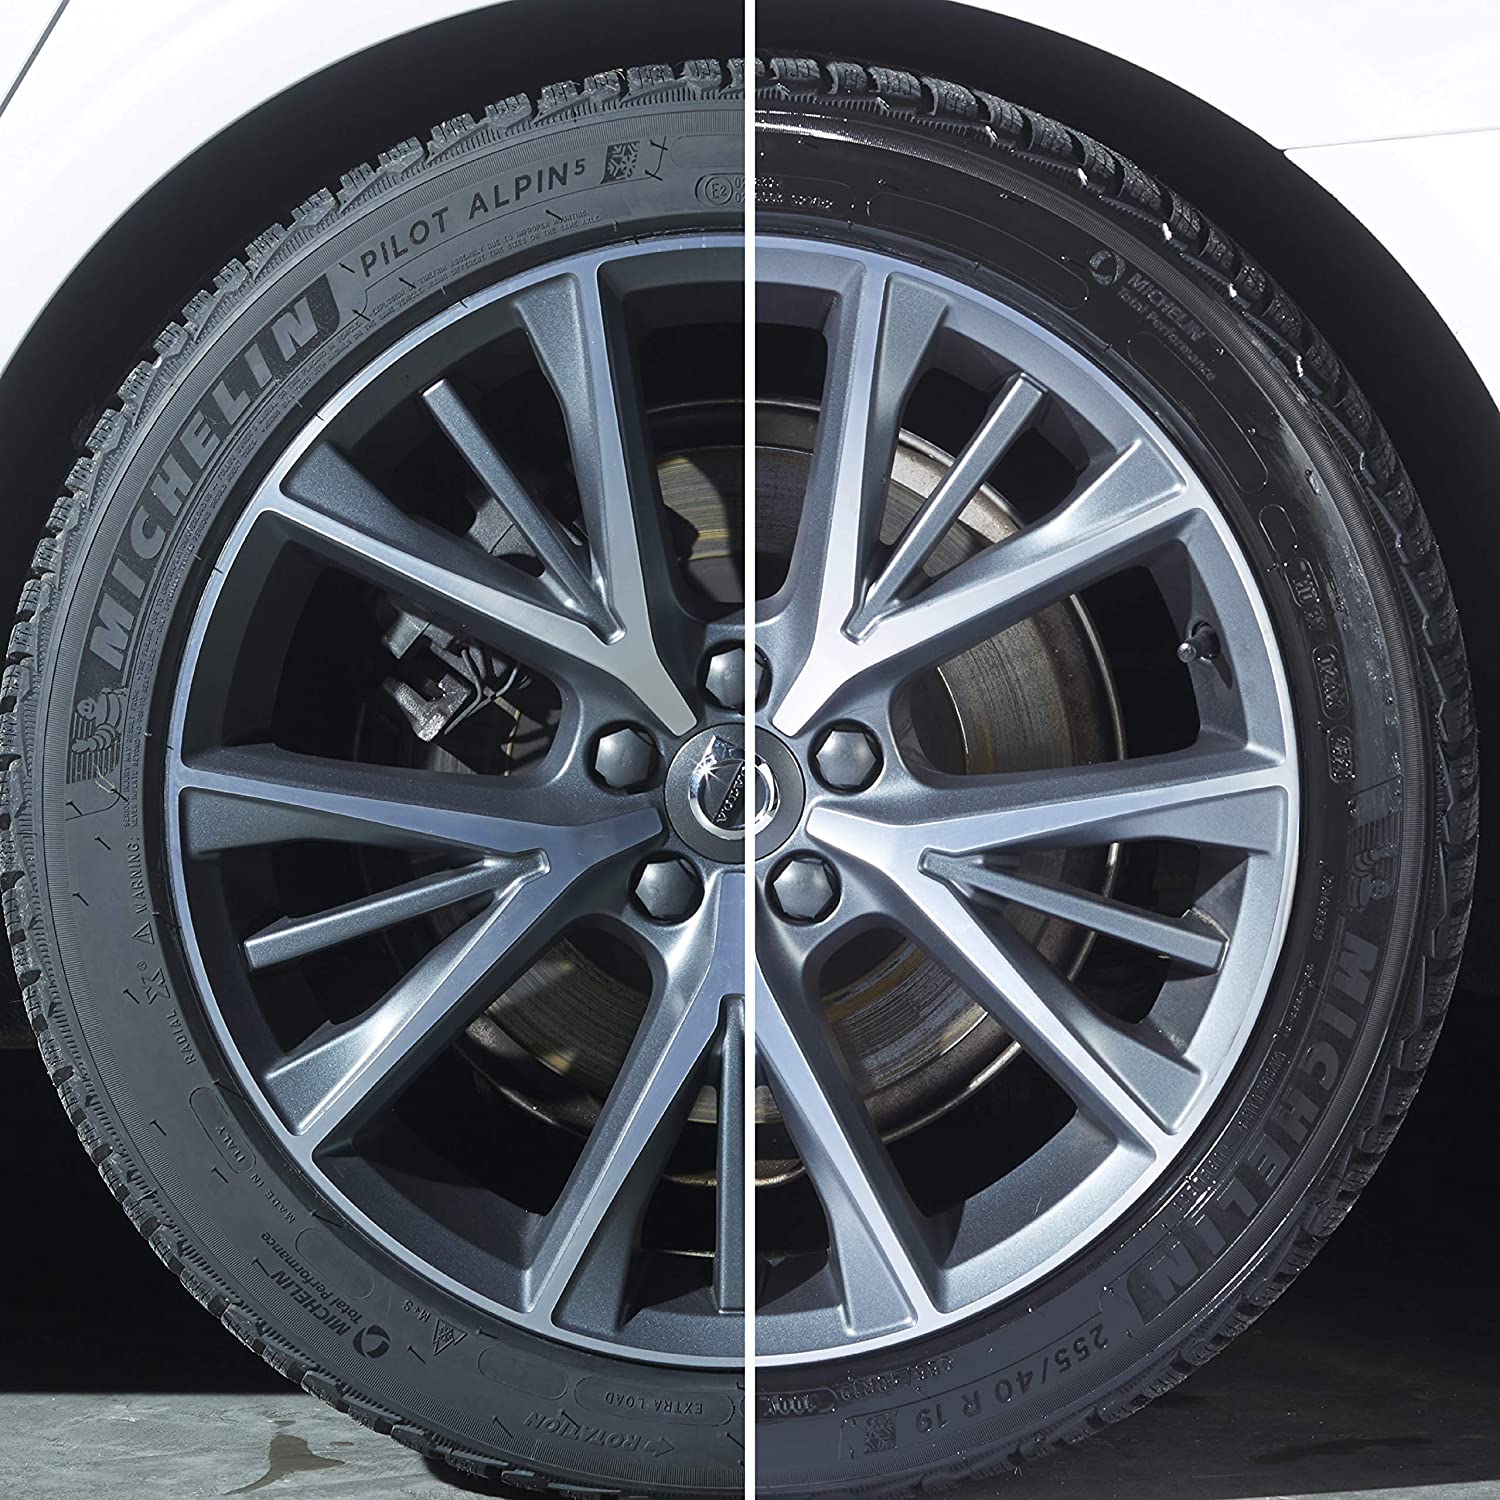 Gel dưỡng lốp và tạo độ bóng lốp xe Tyre Gloss Gel Xtreme Sonax 235241 500ml tặng kèm 1 khăn 3M KL3030 - Bảo vệ lốp xe, chống nứt bạc màu, tác dụng kéo dài, dạng gel tiên tiến thế hệ mới